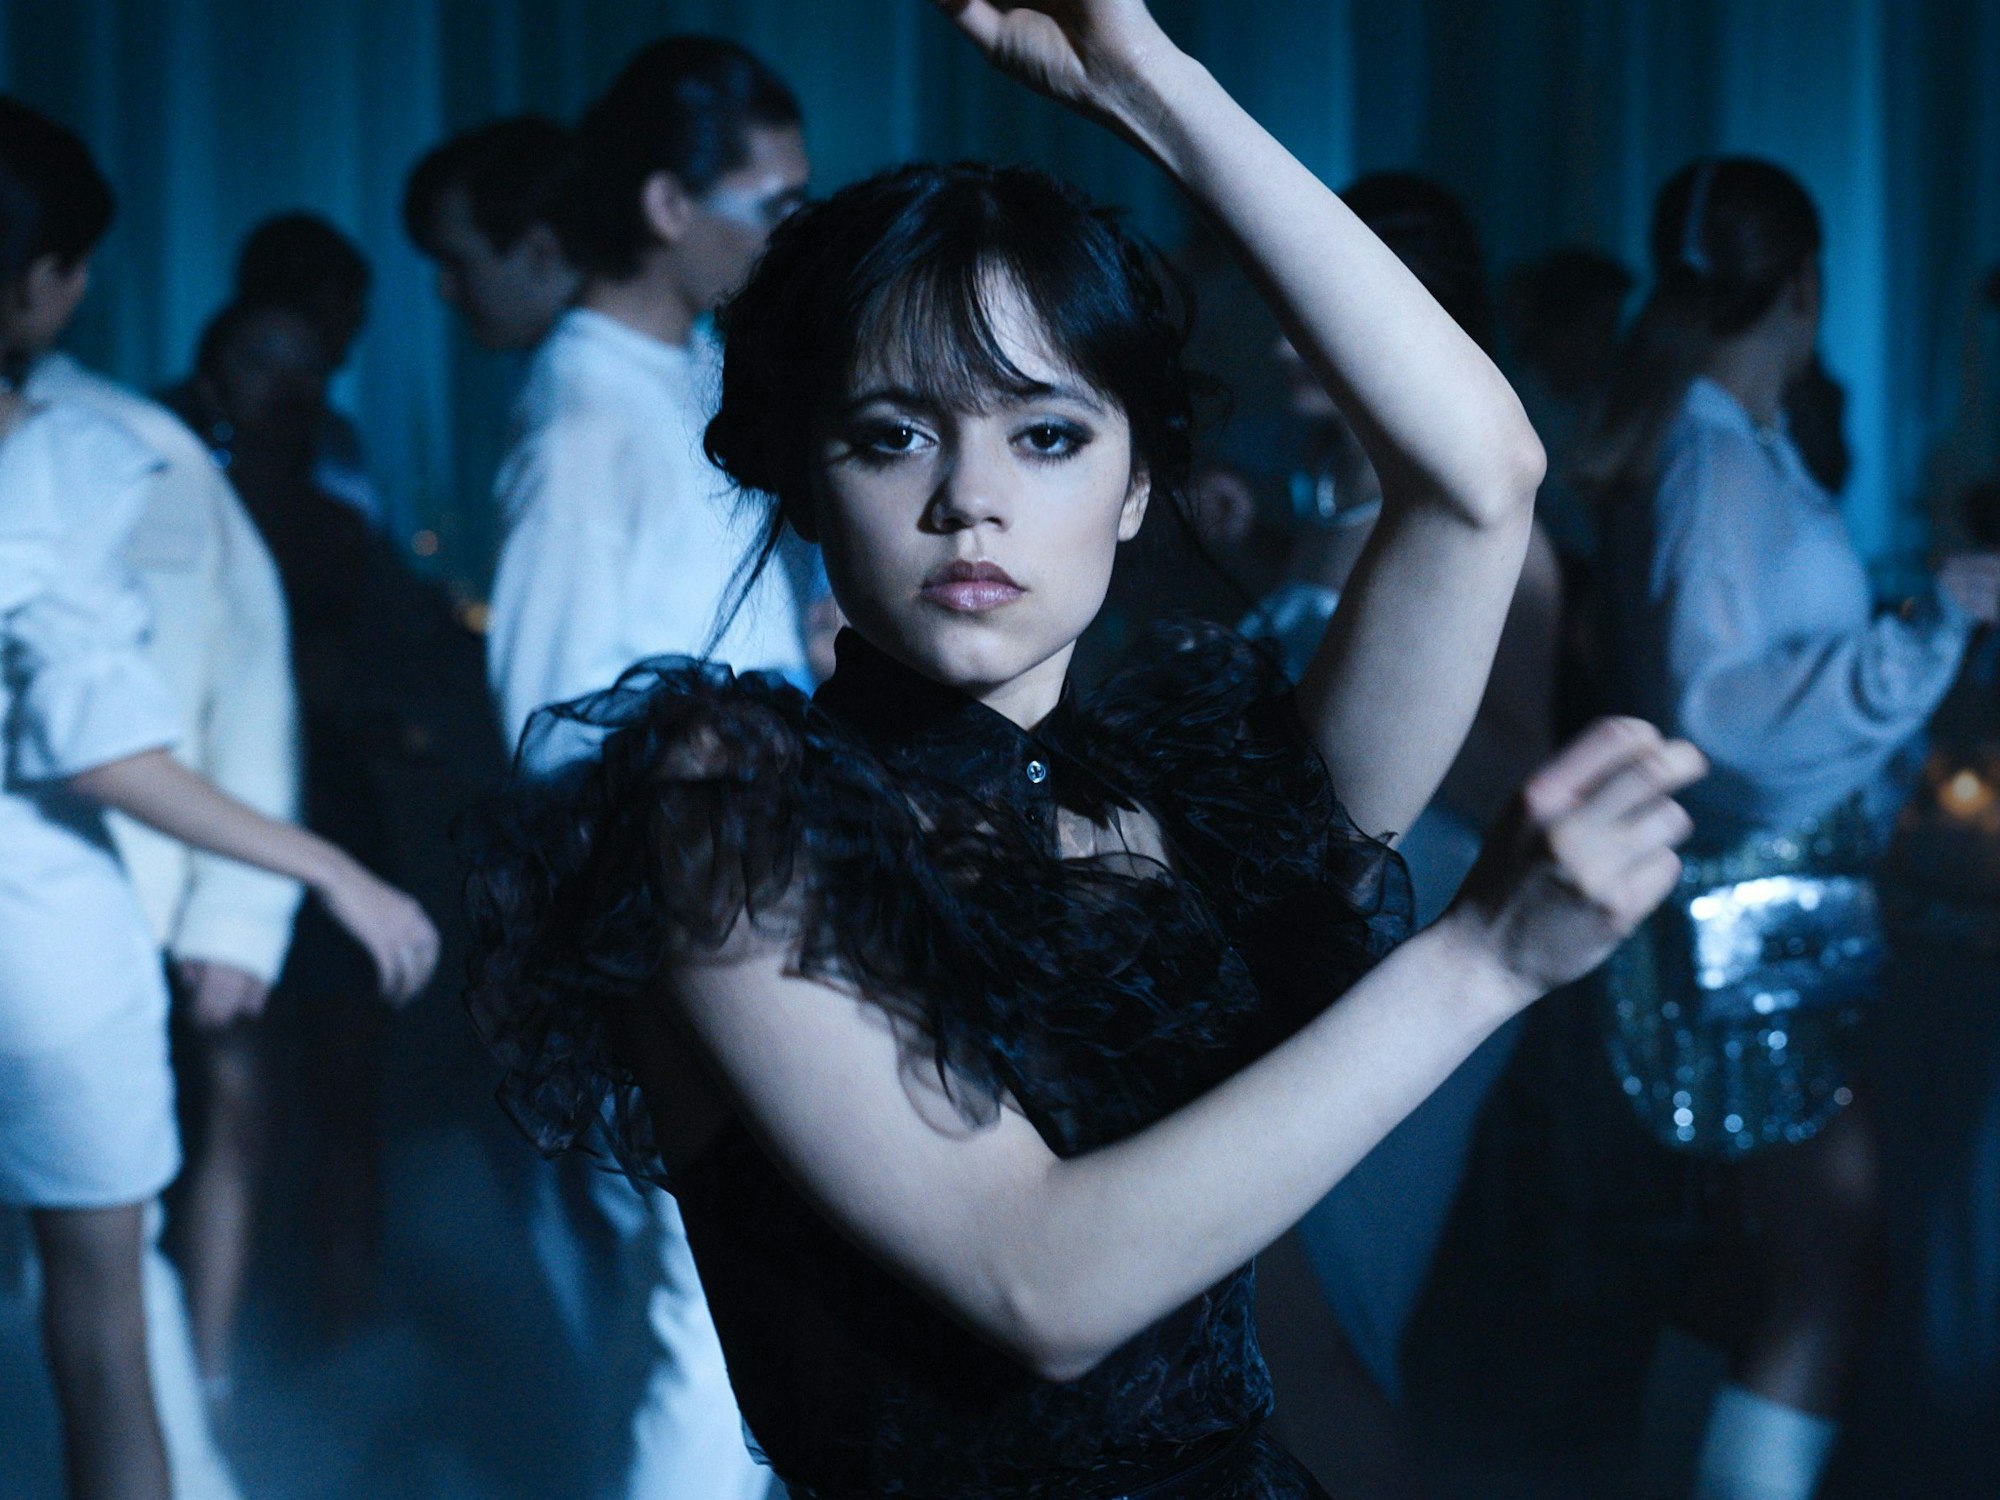 Jenna Ortega als Wednesday Addams in einer Tanzszene der Episode 104 der Netflix-Serie Wednesday (undatiert).